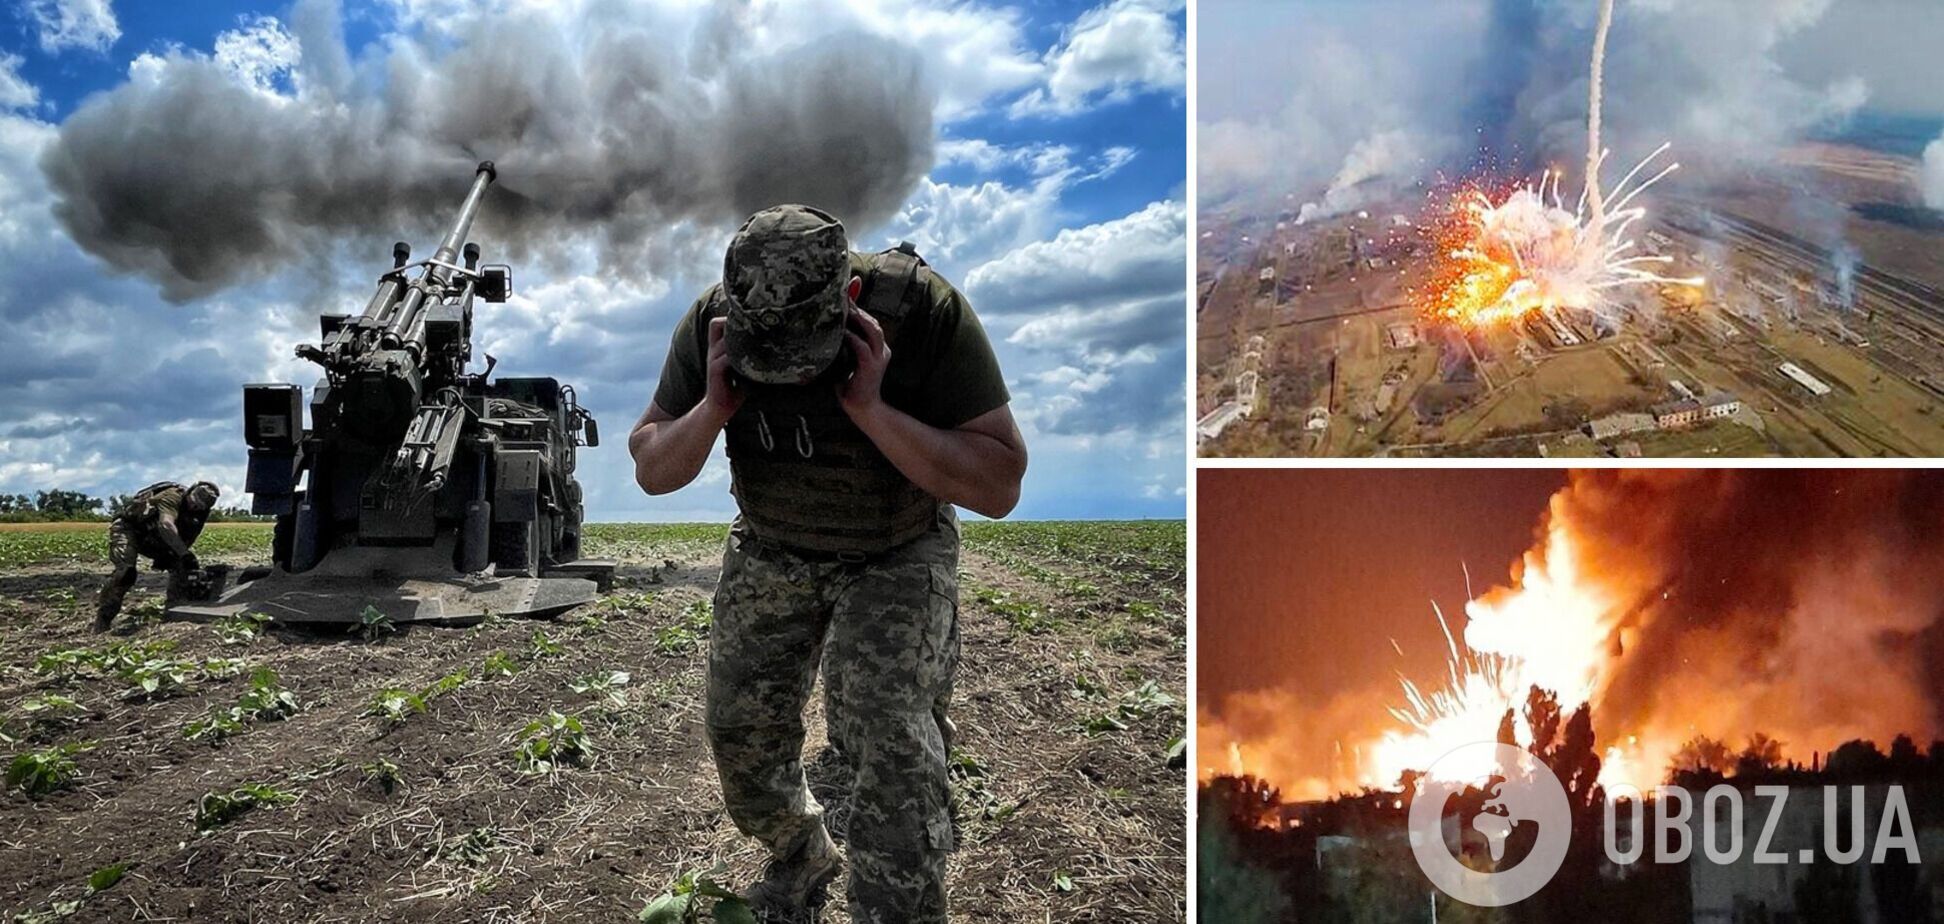 Українські воїни знищили 17 складів із боєприпасами окупантів за тиждень. Інфографіка